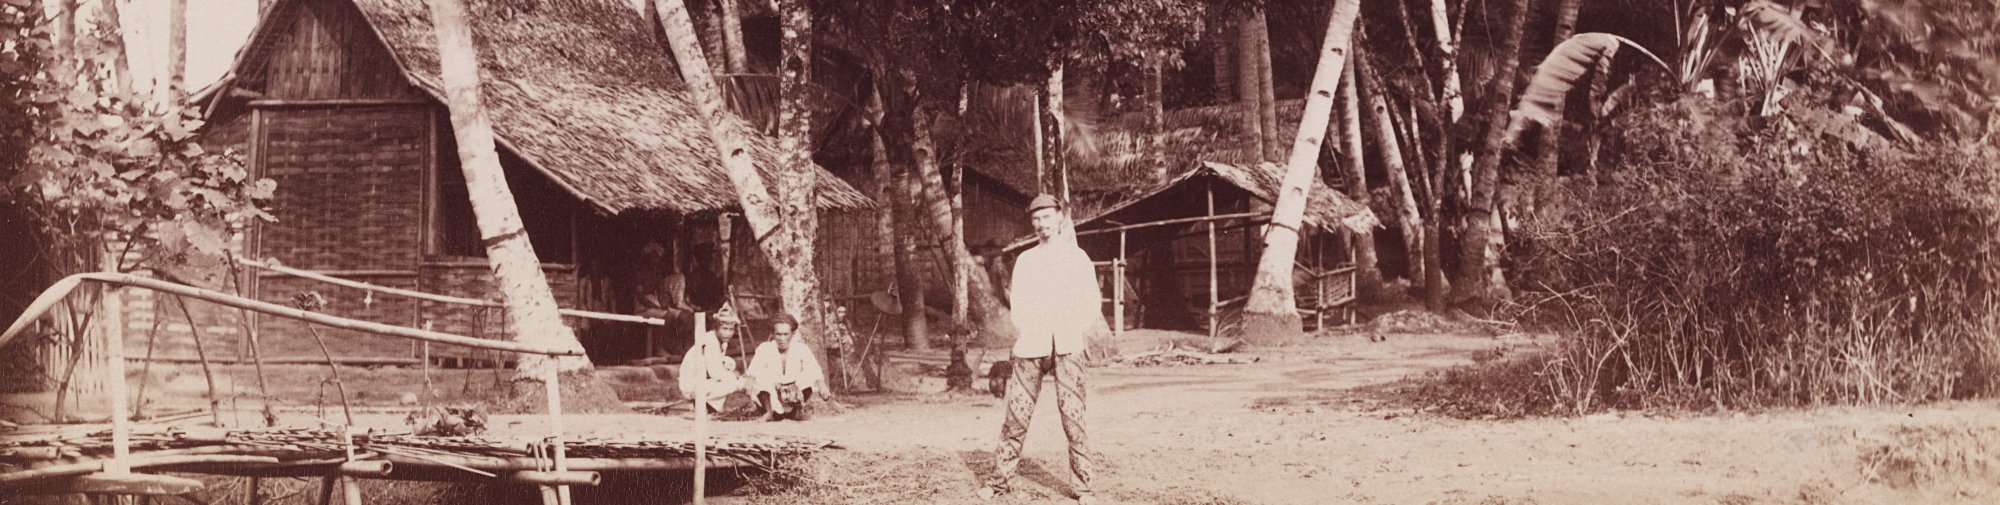 Sidney W. Brown avec deux indigènes, Indonésie 1888, archives du musée Langmatt